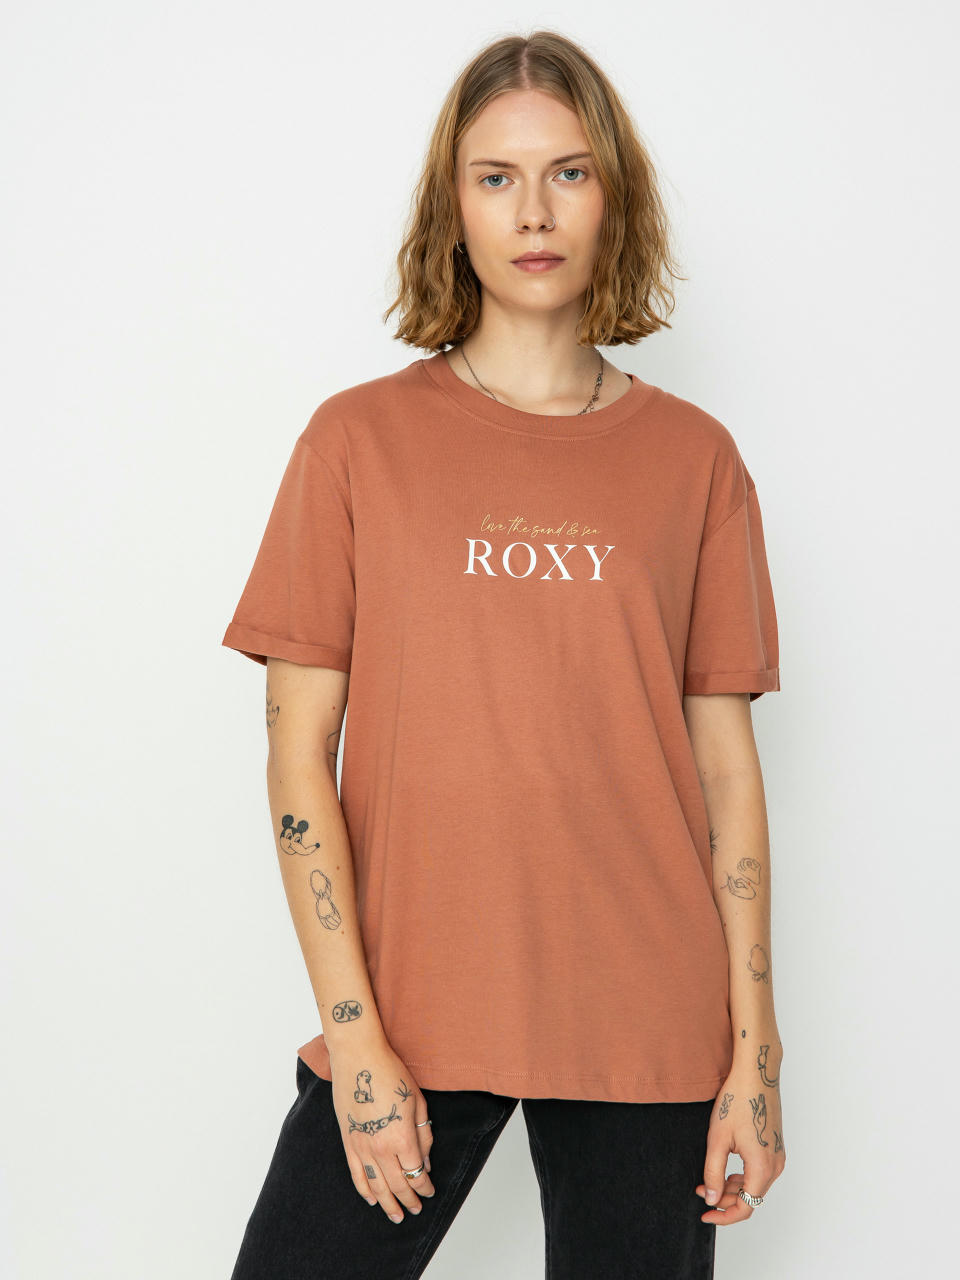 Damen Bekleidung Ausverkauf Roxy - SUPER-SHOP |